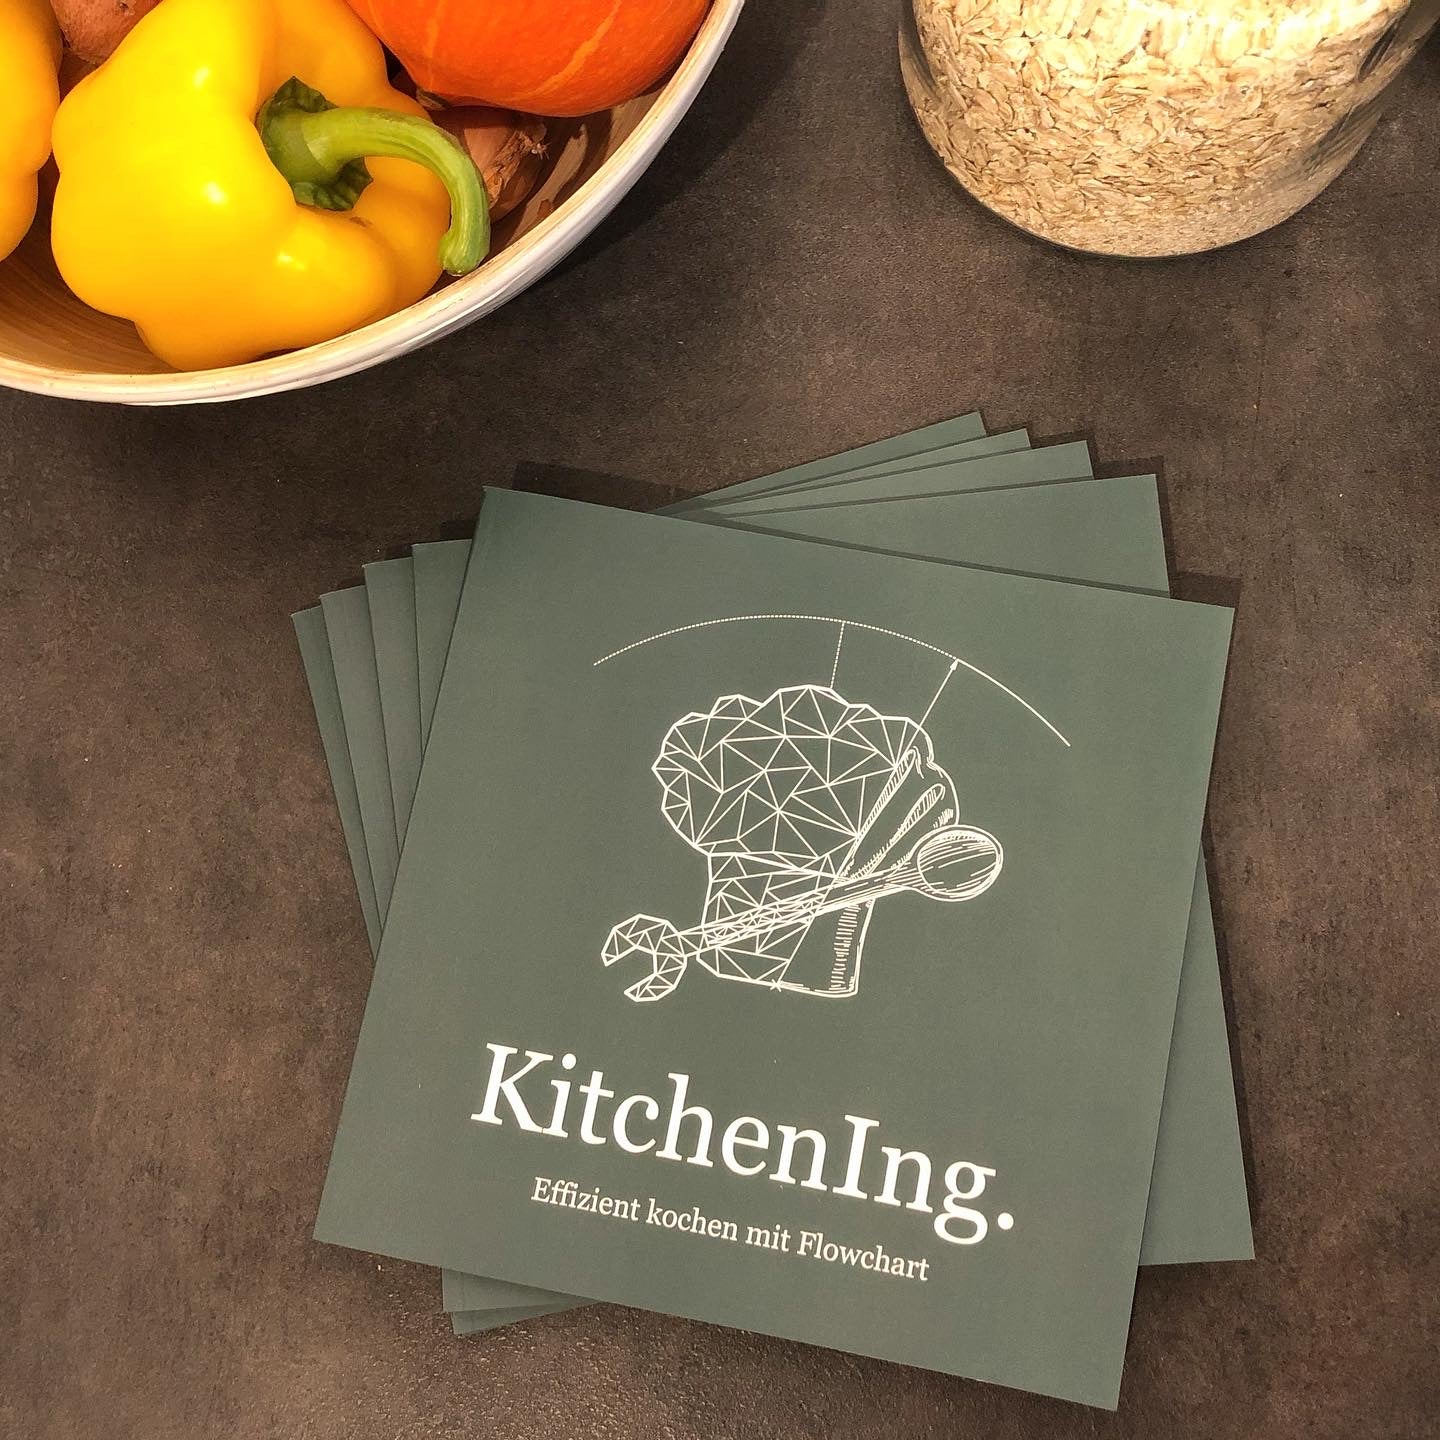 Kochbuch von KitchenIng. – Effizient kochen mit Flowchart - shopstartups.de | Startup Produkte